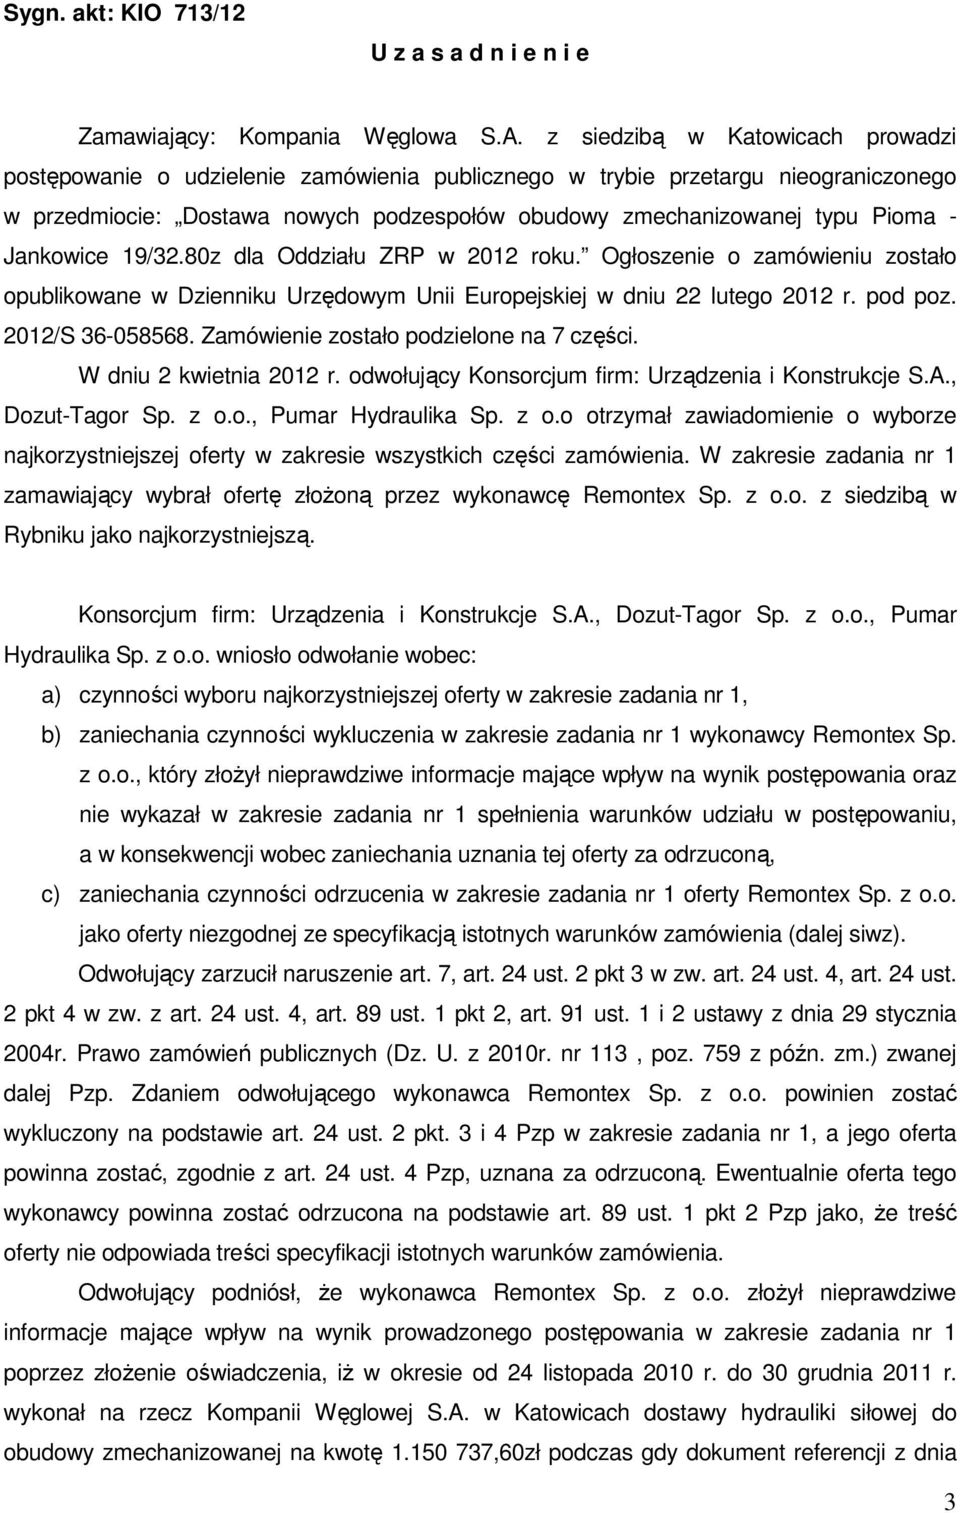 Jankowice 19/32.80z dla Oddziału ZRP w 2012 roku. Ogłoszenie o zamówieniu zostało opublikowane w Dzienniku Urzędowym Unii Europejskiej w dniu 22 lutego 2012 r. pod poz. 2012/S 36-058568.